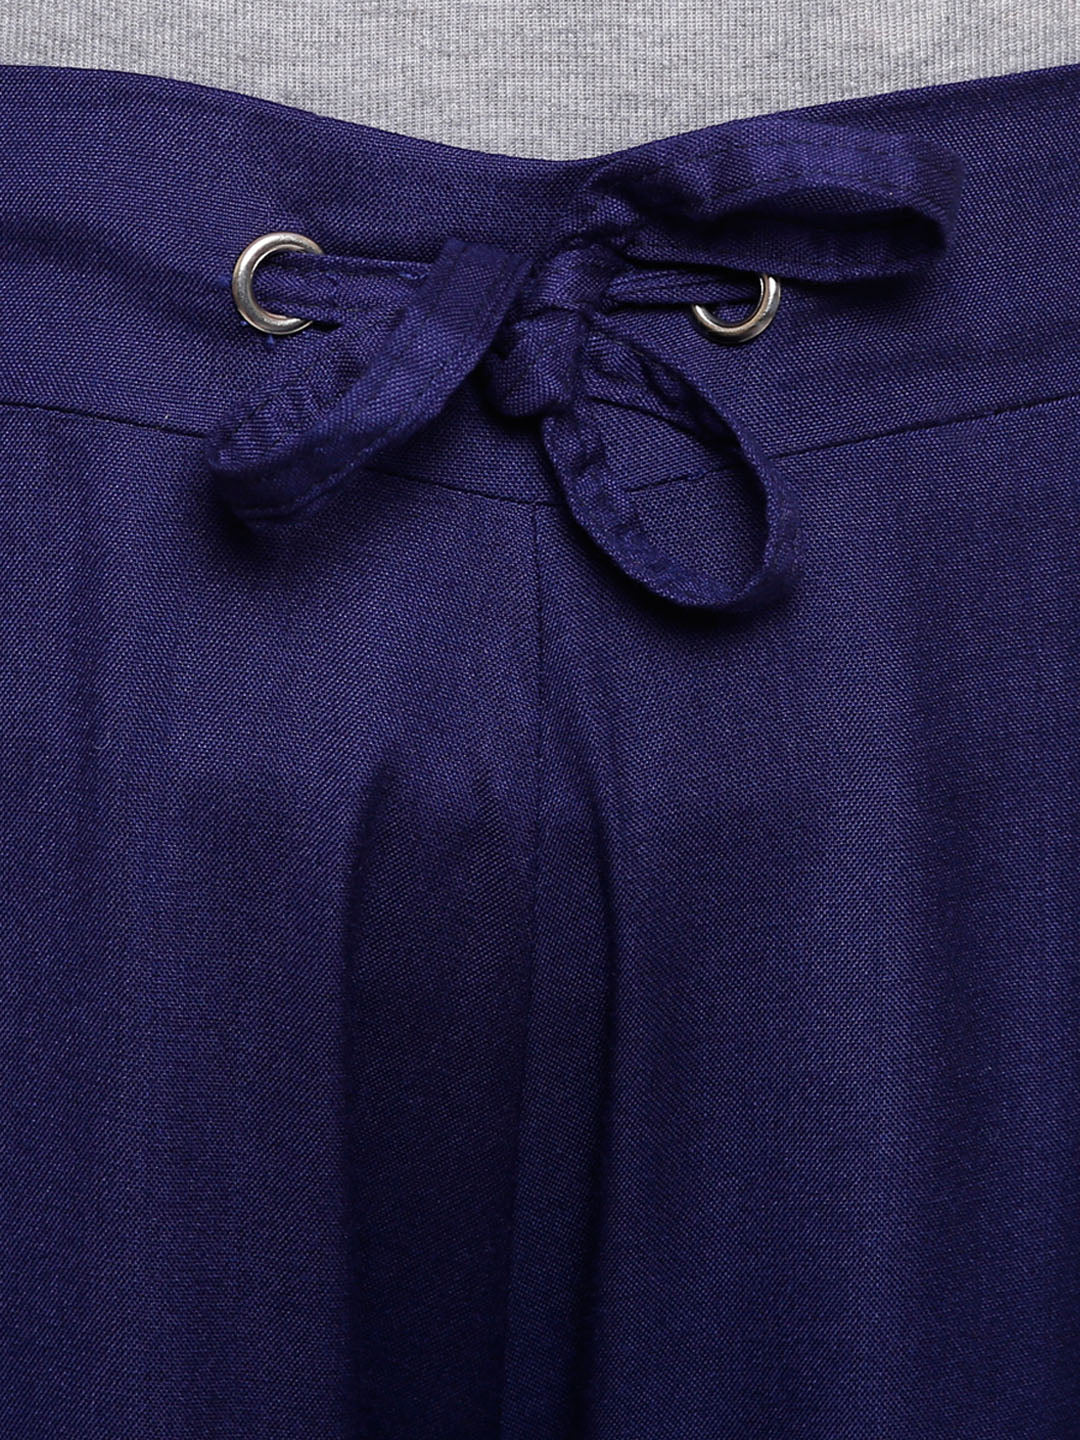 Saundarya Women's Navy Blue Skirt Palazzos